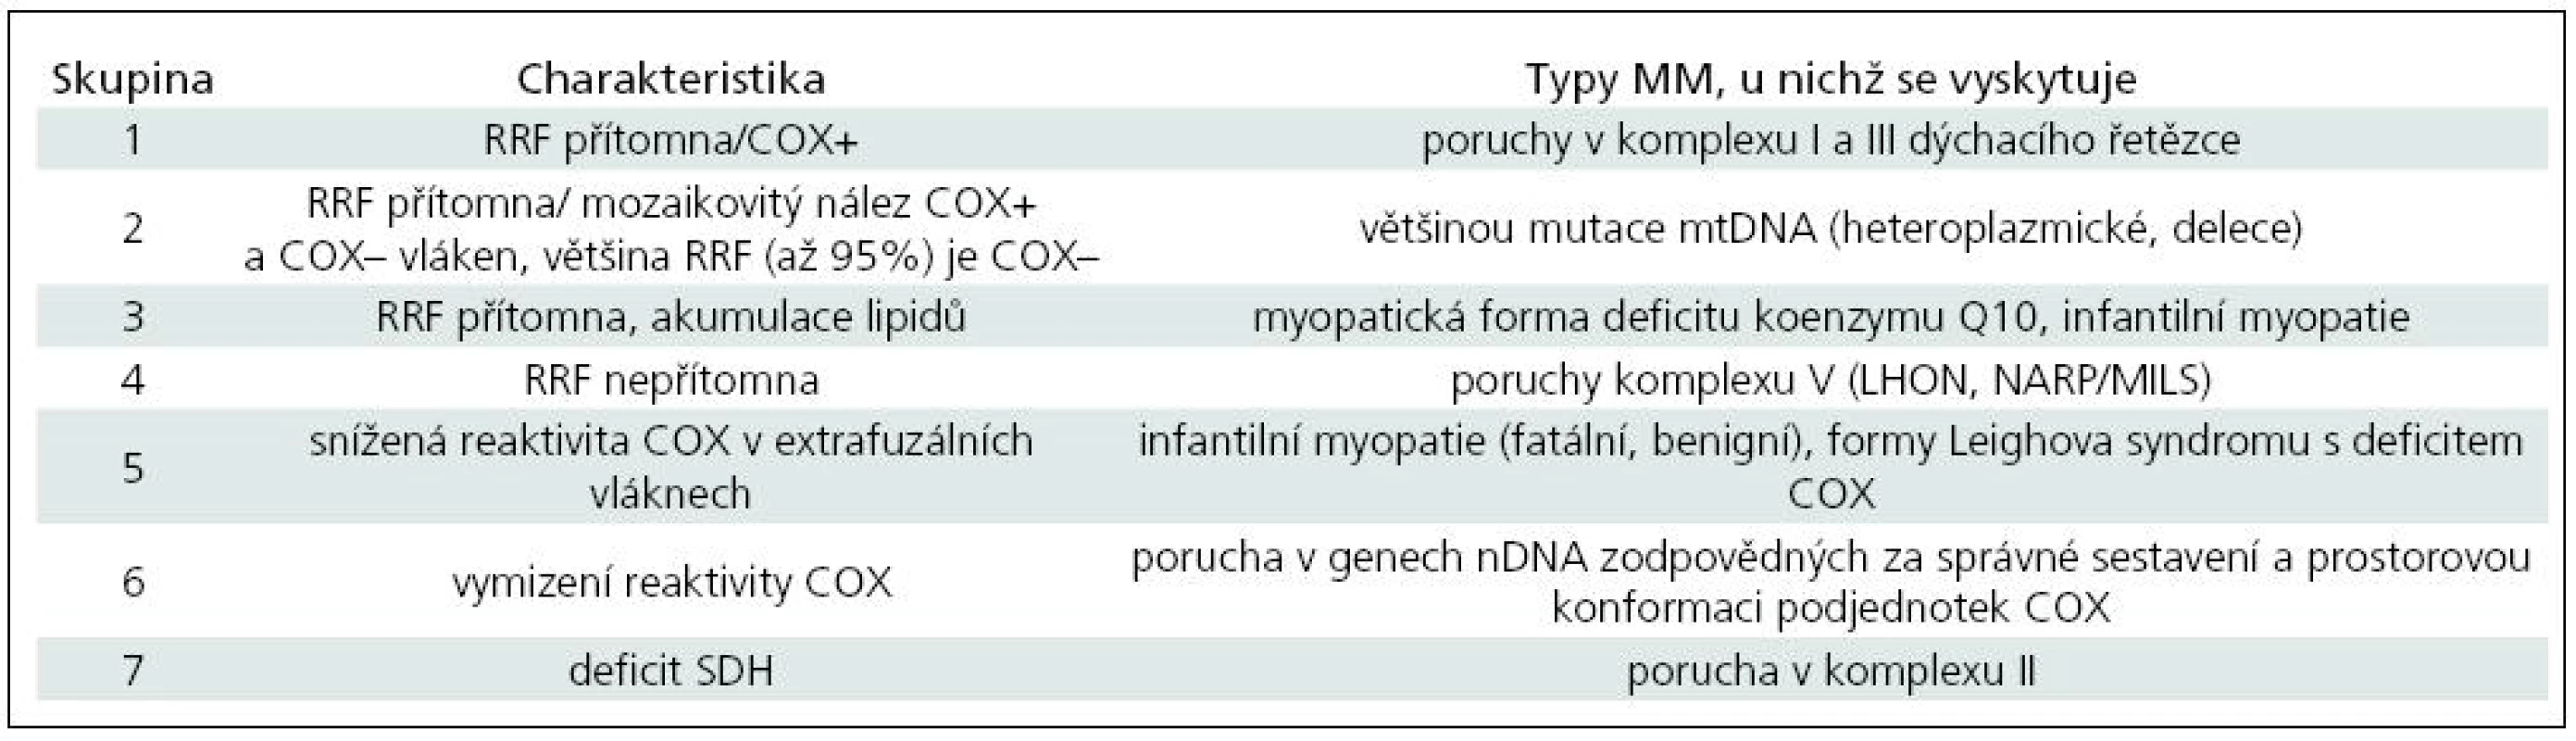 Skupinová charakteristika mitochondriálních myopatií na základě histologického nálezu.